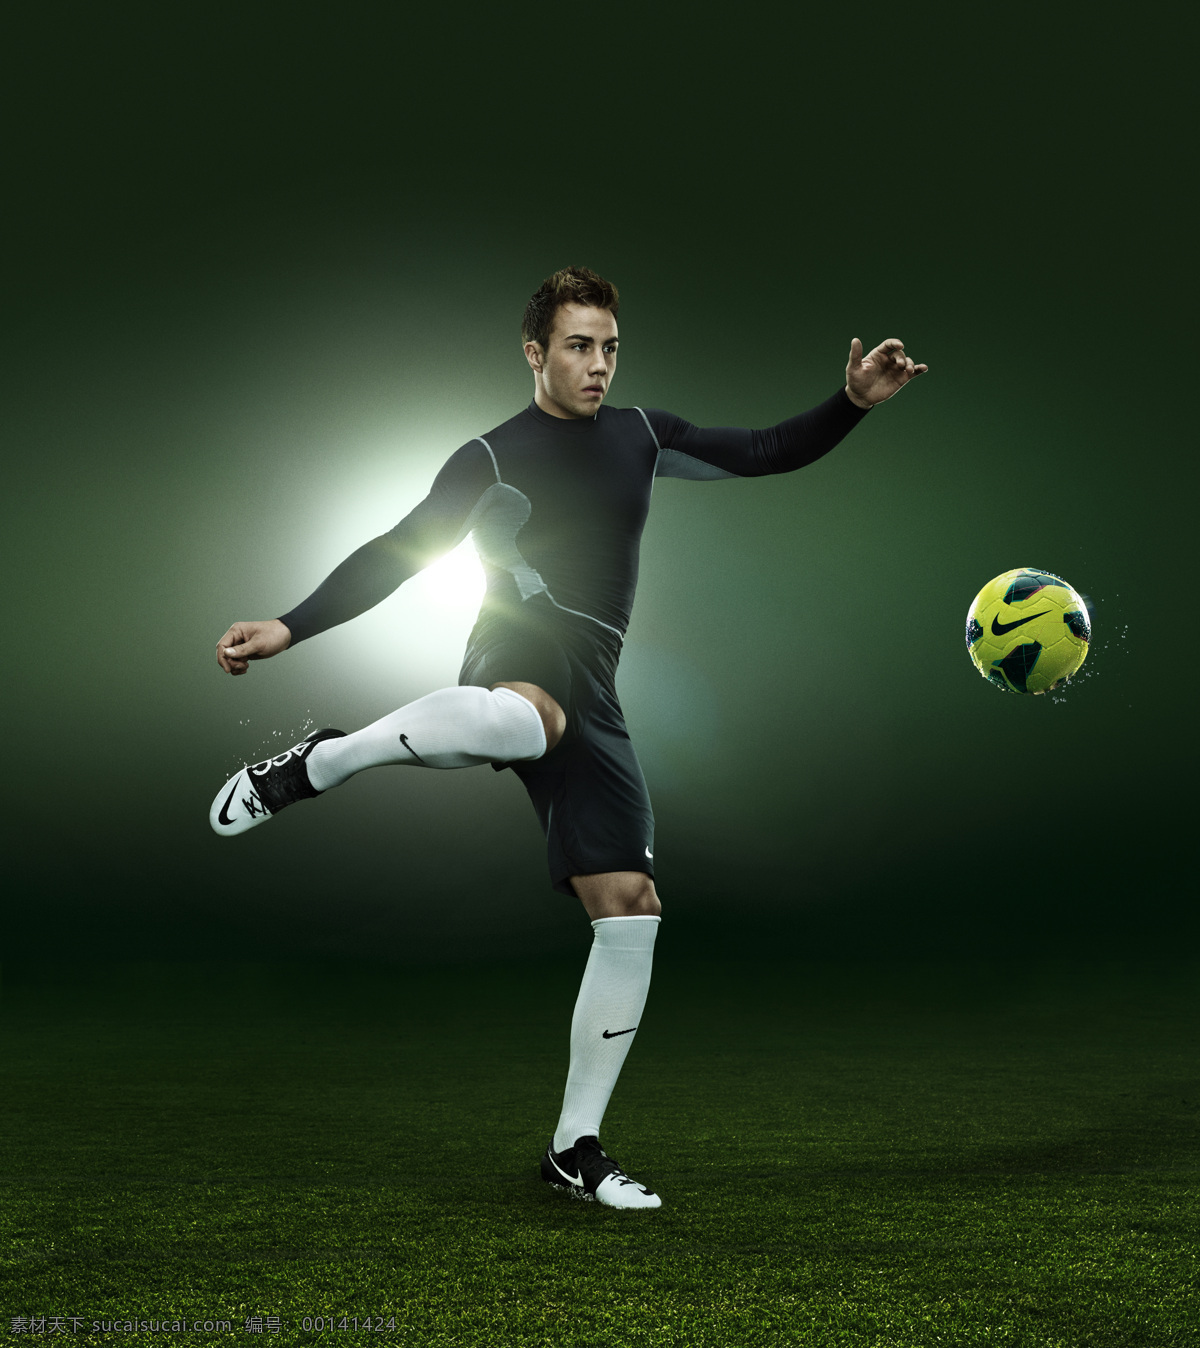 nike 广告宣传 平面广告 人物图库 职业人物 足球明星 足球 系列 平面 足球鞋广告 矢量图 日常生活